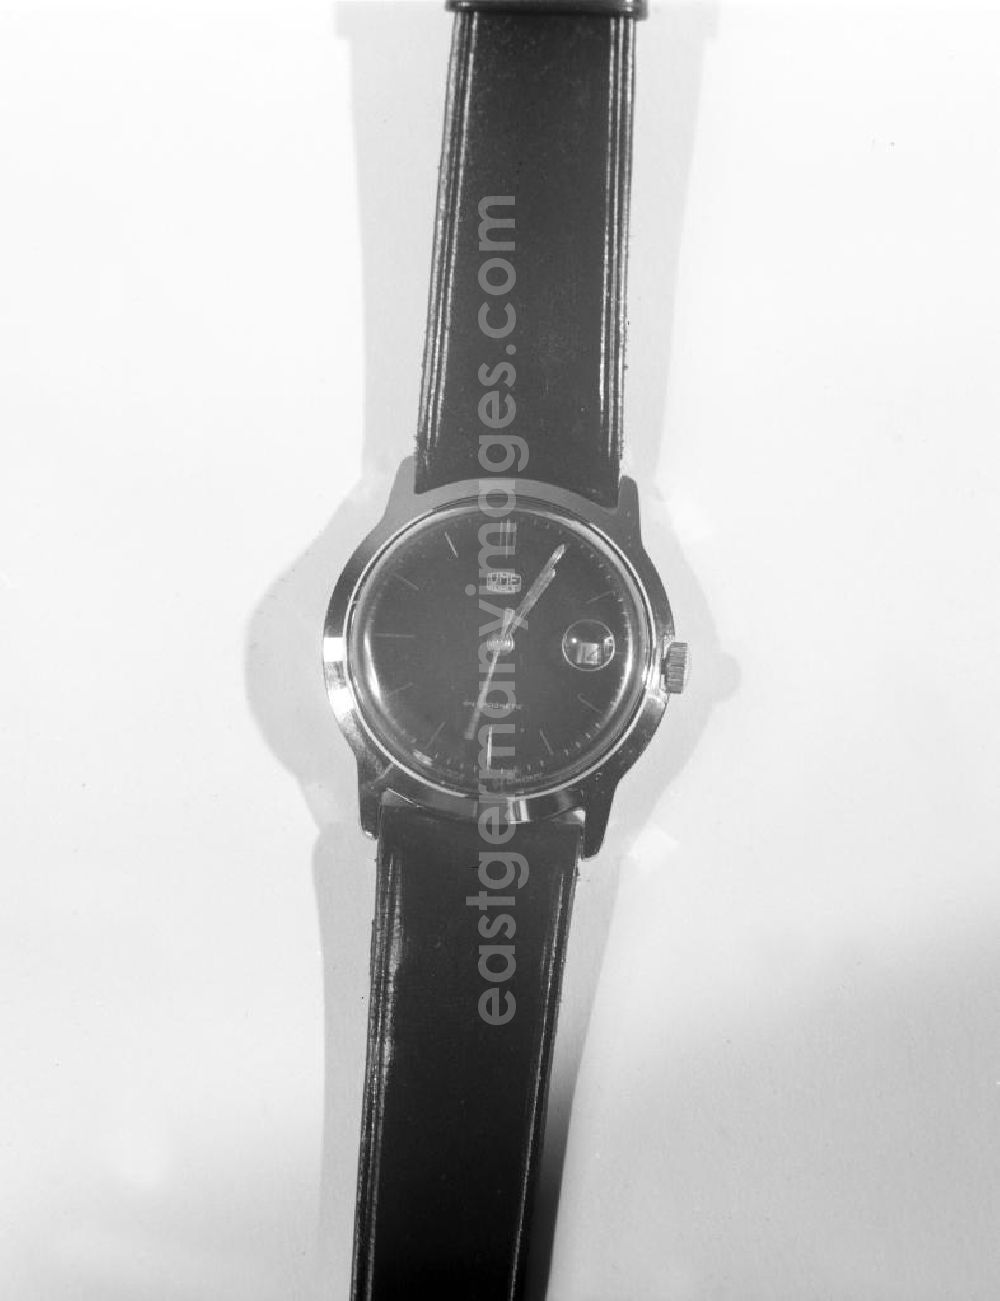 Ruhla: Blick auf eine Armbanduhr mit Datumsanzeige aus dem VEB Uhrenwerke Ruhla.